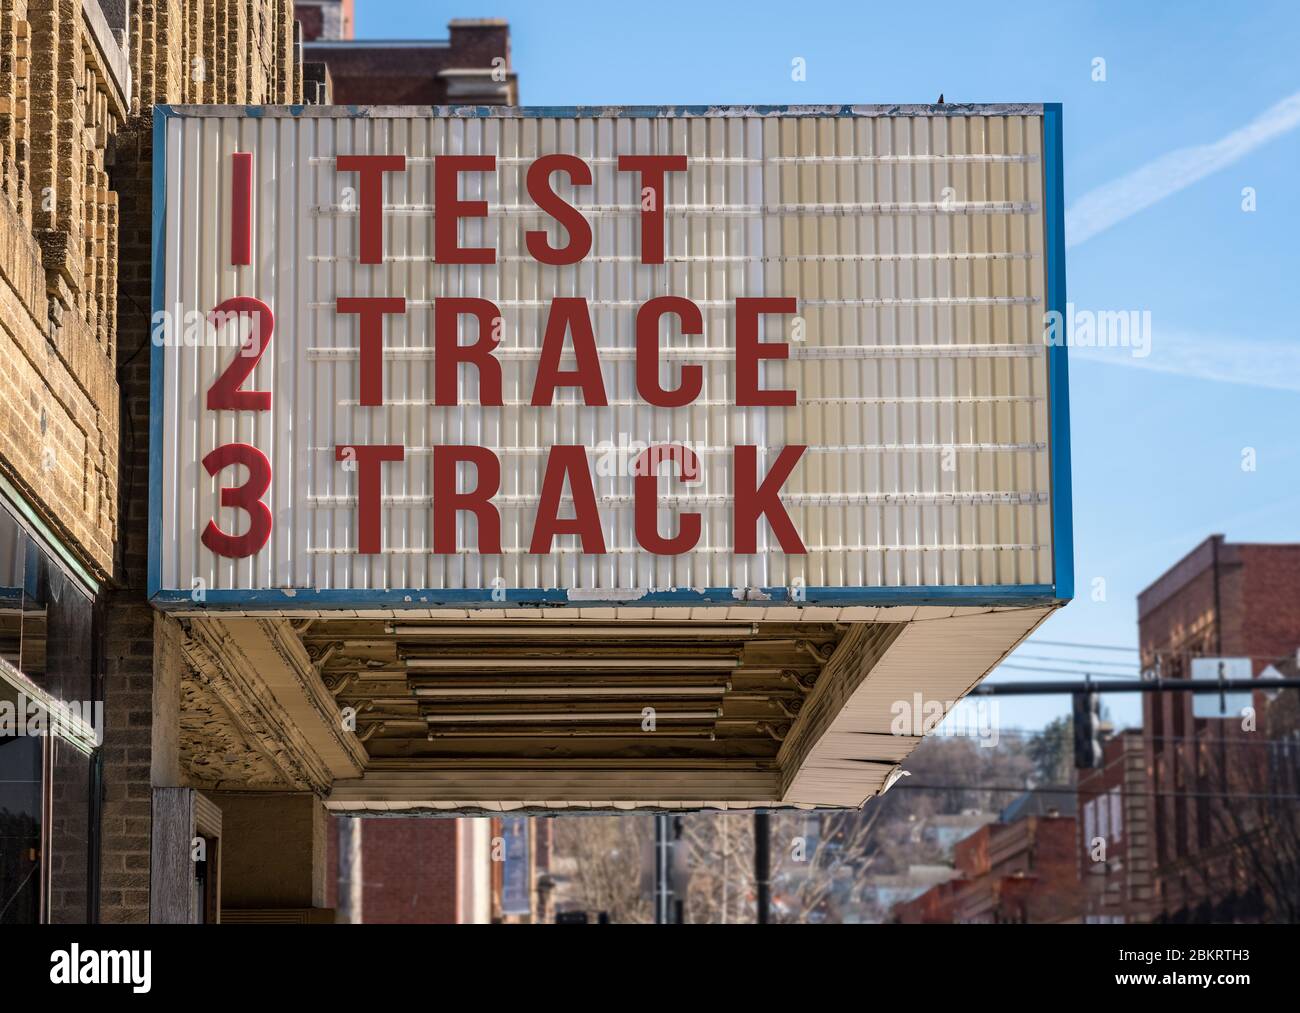 Mockup der Kino-Plakatwand mit Test, Trace, Track-Nachricht, um die Coronavirus-Epidemie zu kontrollieren, sobald Wirtschaft öffnet sich Stockfoto